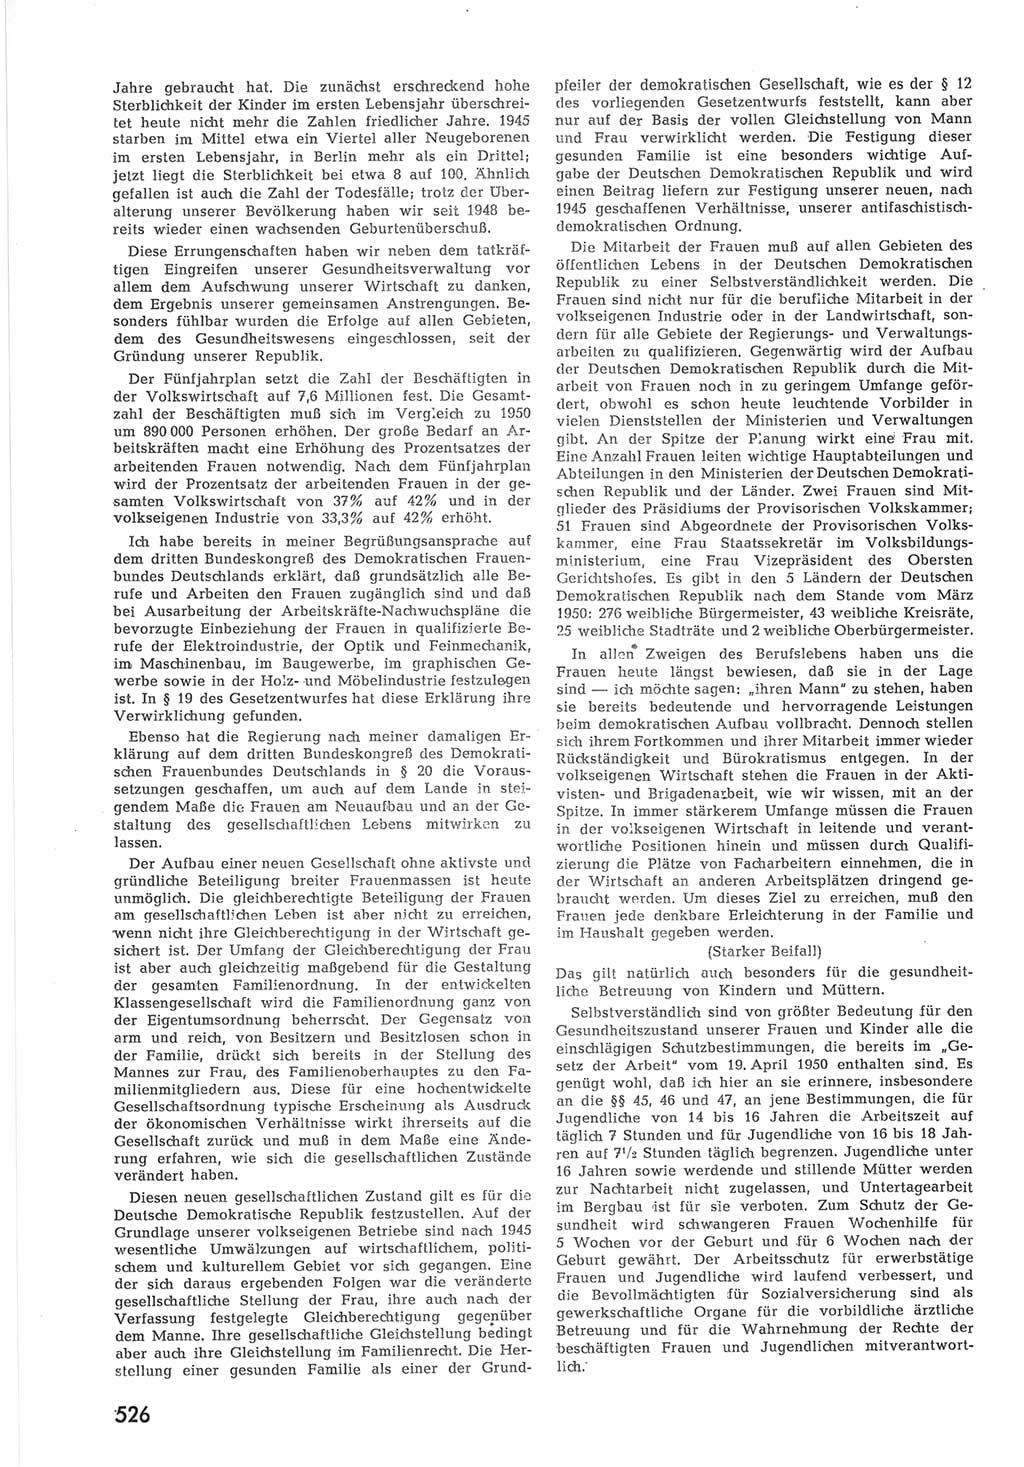 Provisorische Volkskammer (VK) der Deutschen Demokratischen Republik (DDR) 1949-1950, Dokument 544 (Prov. VK DDR 1949-1950, Dok. 544)